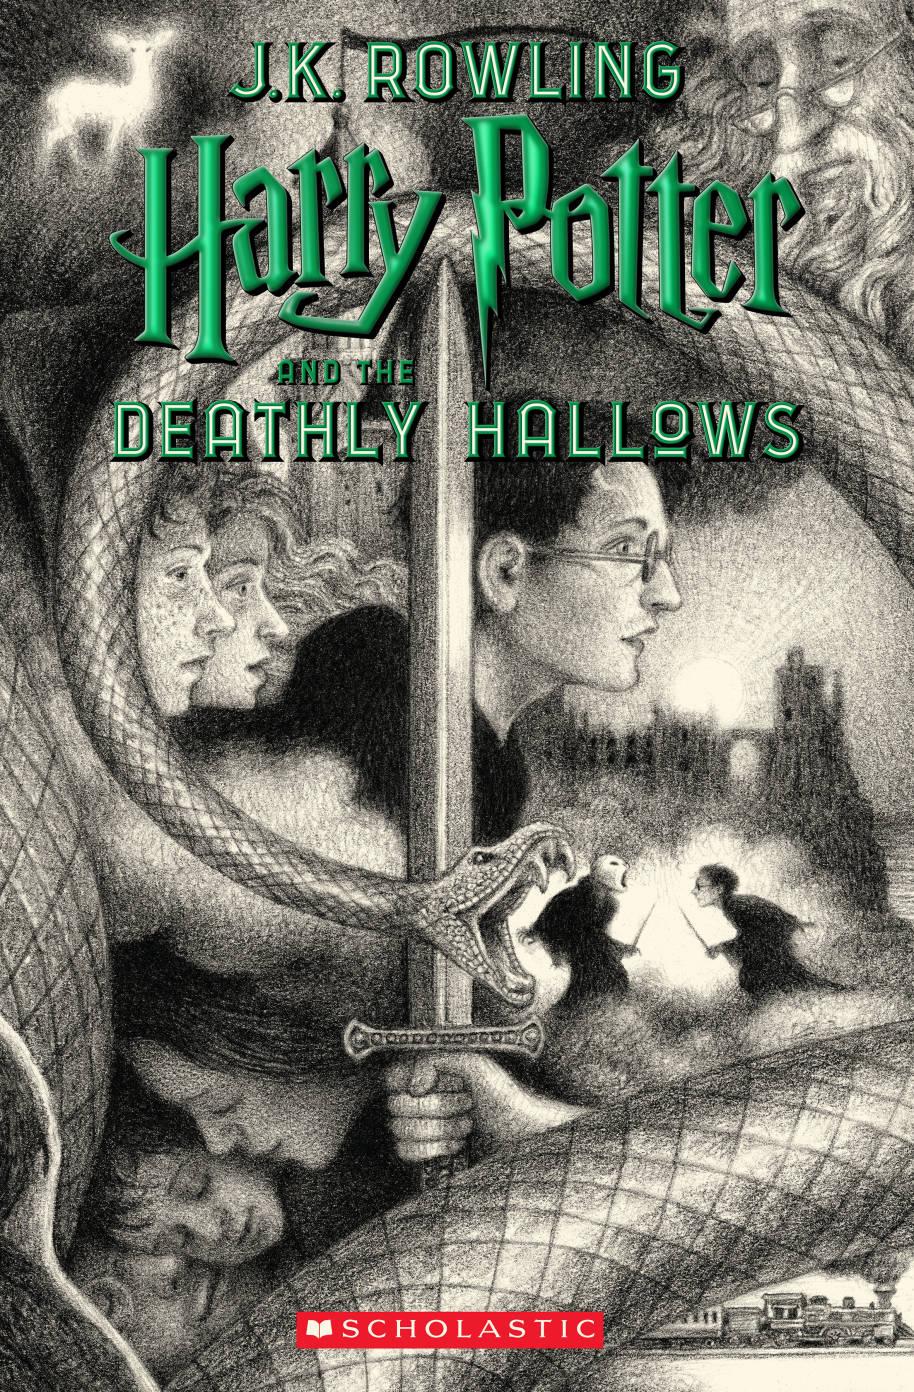 Couverture de Brian Selznick pour Harry Potter et les Reliques de la Mort 